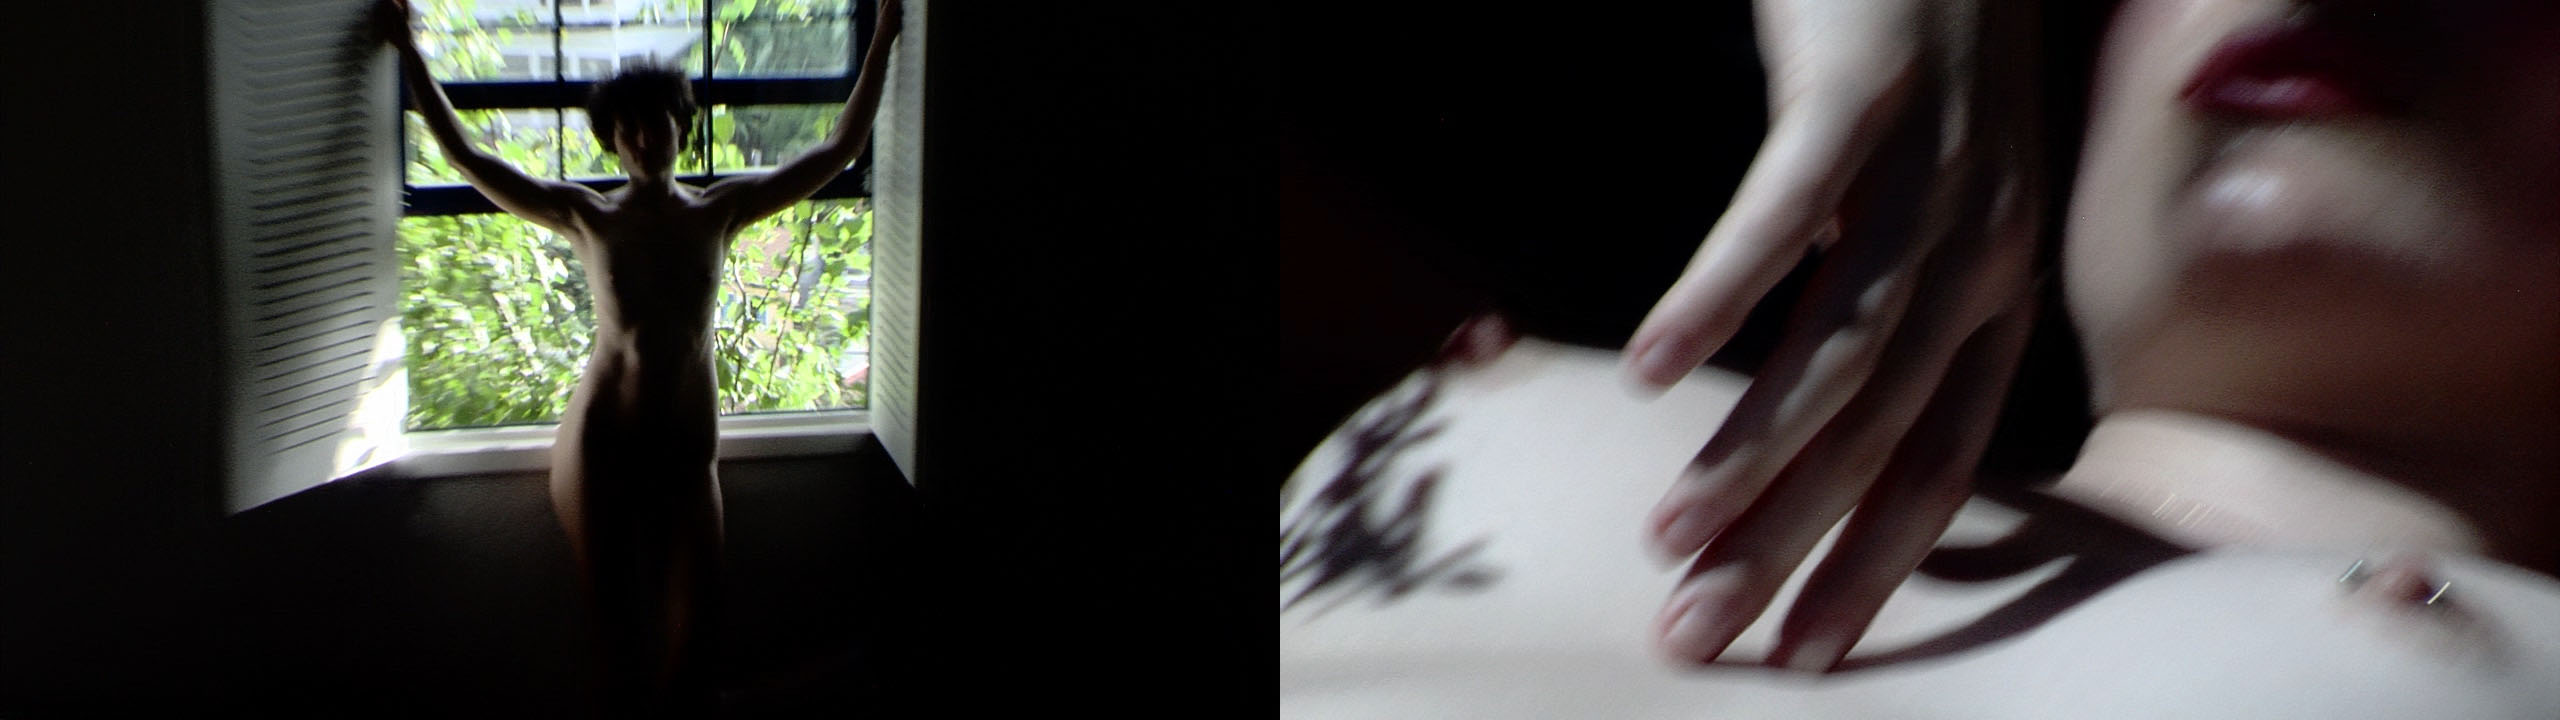 Links: Zu sehen ist die schlanke, unbekleidete Silhouette von Independent Escort Niki Blau im Gegenlicht vor einem offenen Fenster. Rechts: Detail, wie Niki Blau im Sonnenlicht mit der Hand über ihren nackten Oberkörper fährt.